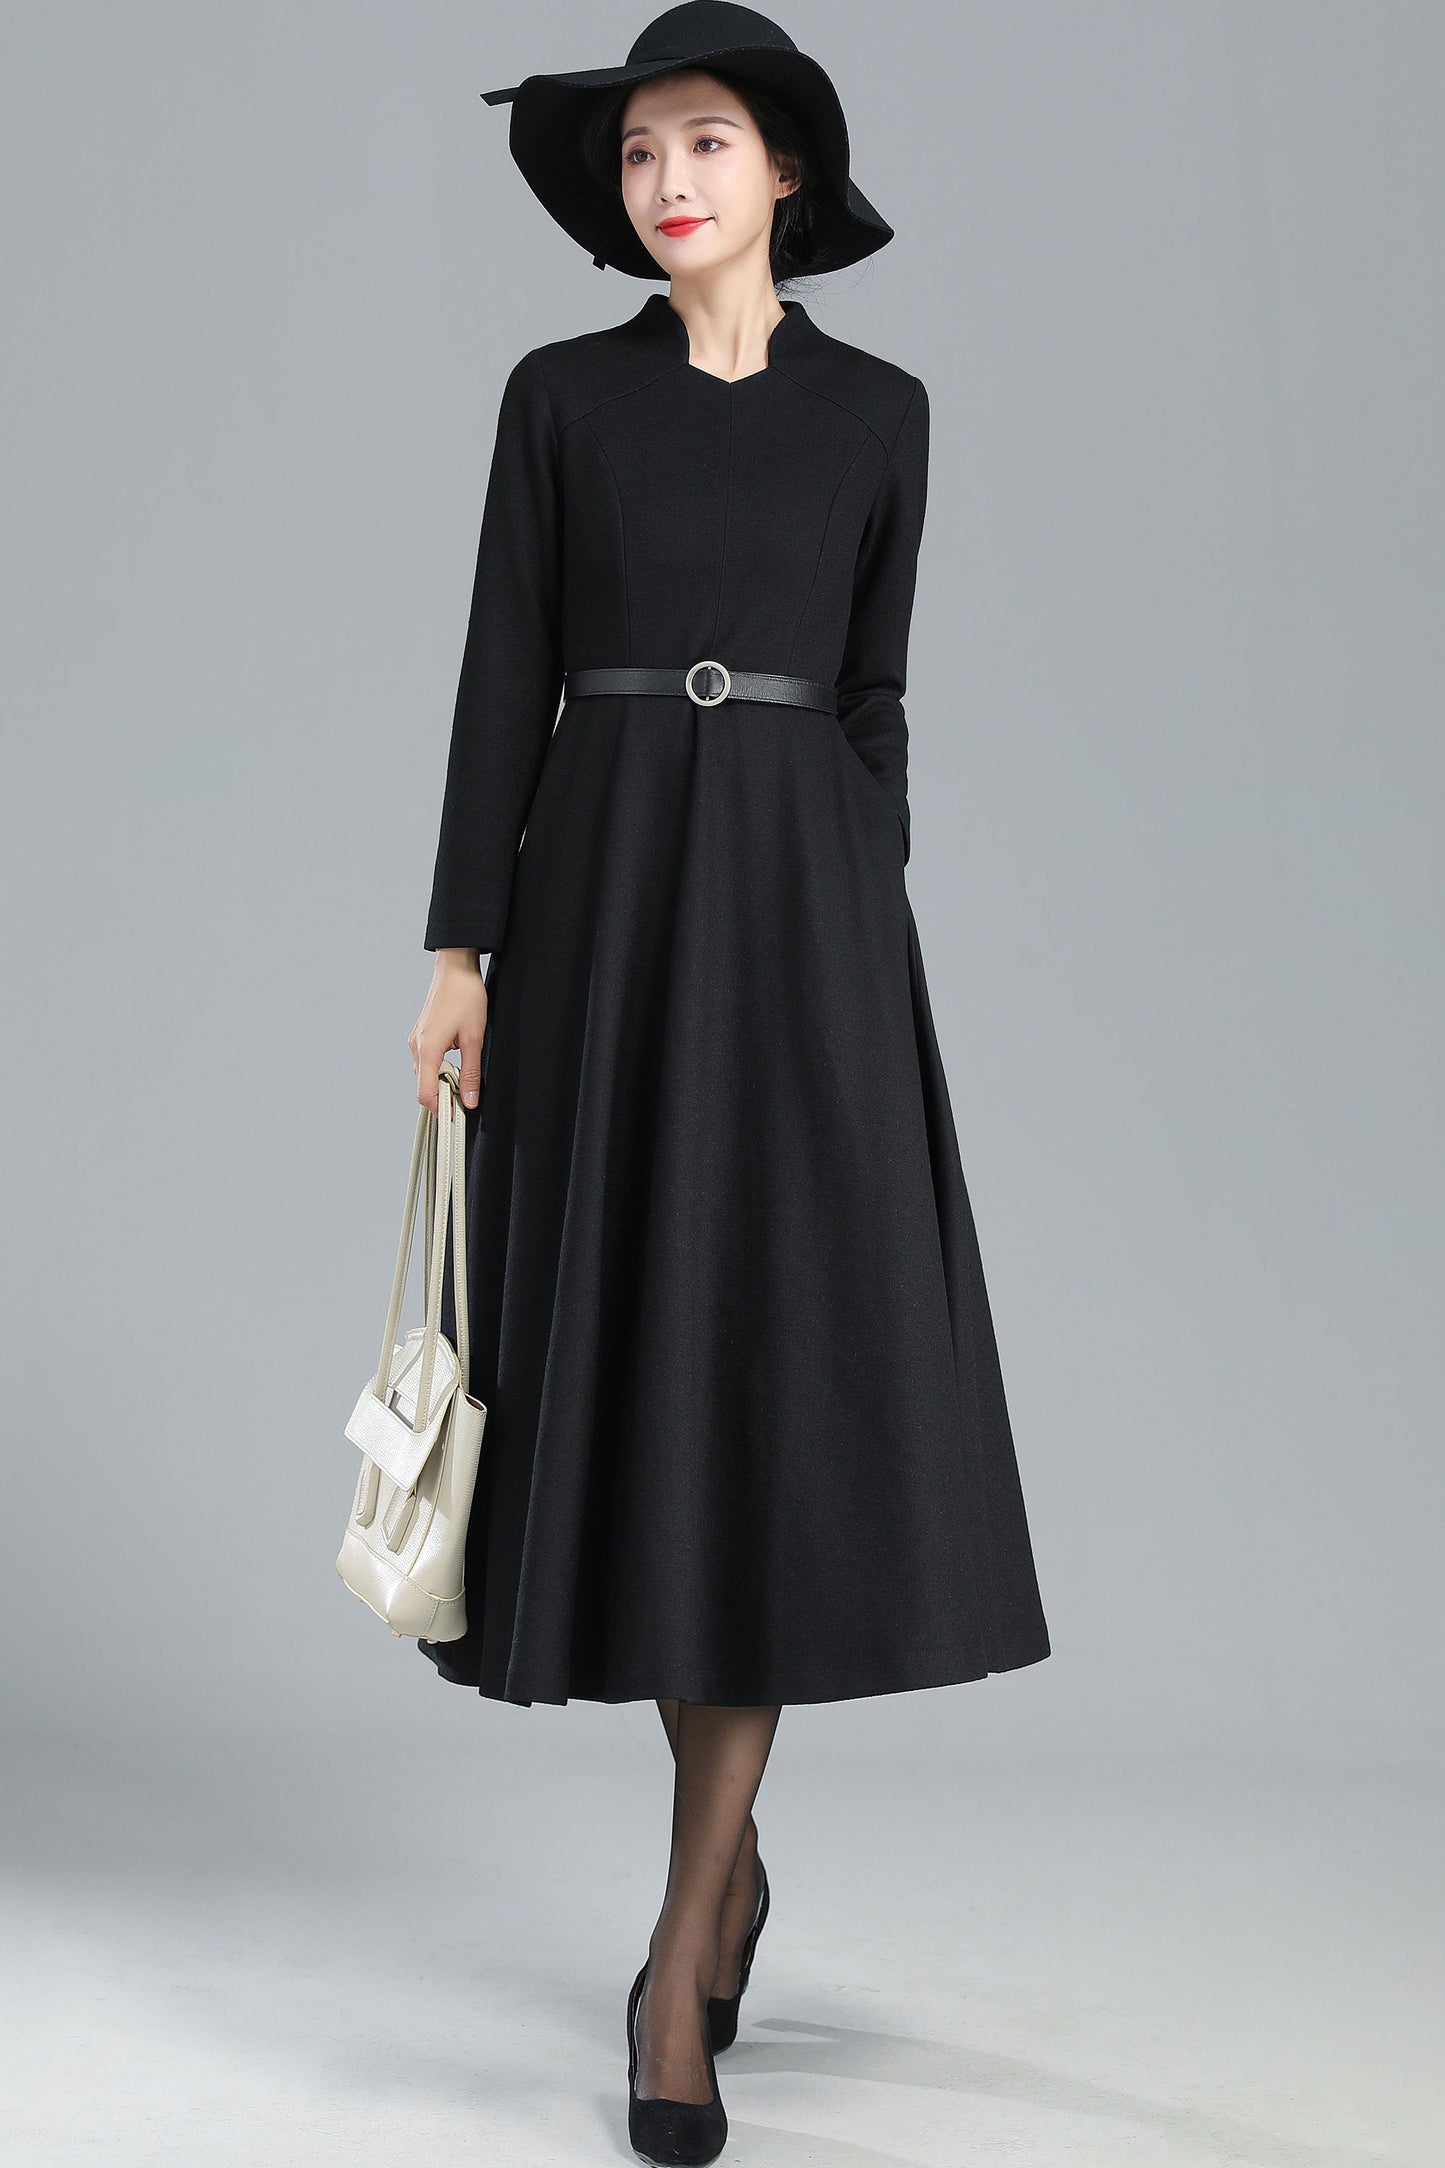 Black Long Wool Winter Dress Women 3251